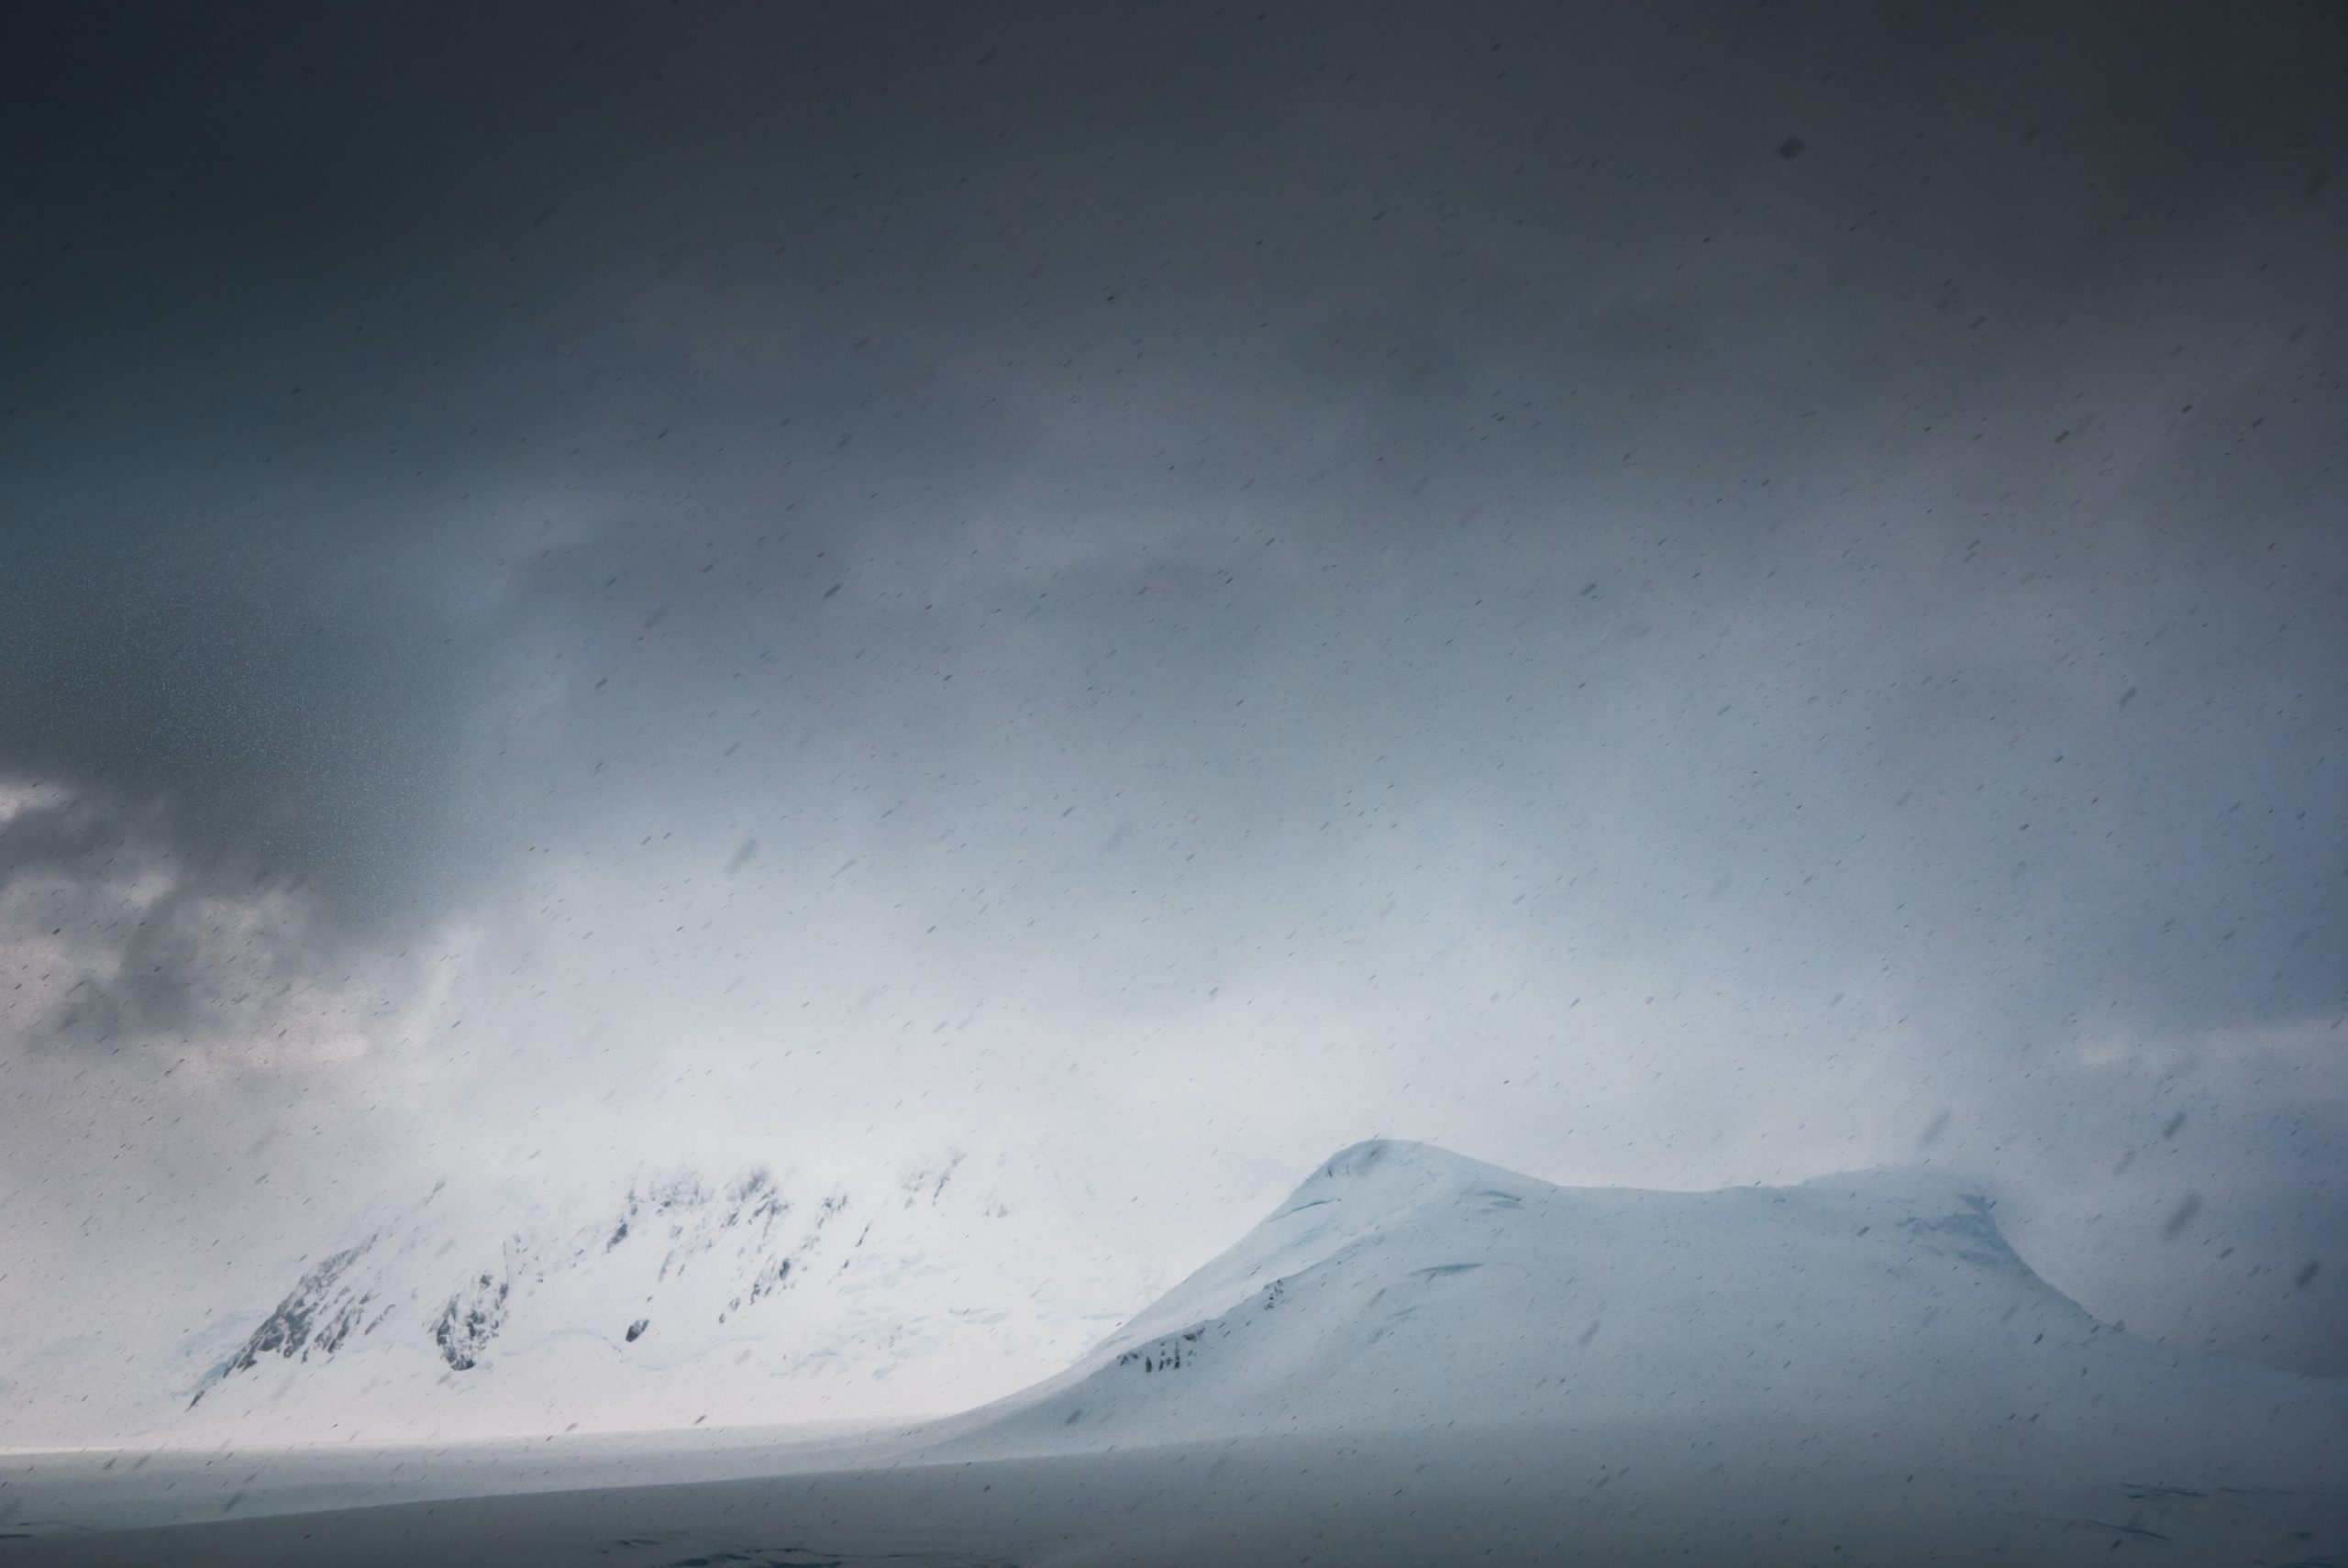 Une photographie de montagnes rigides couvertes de neige. Le ciel est rempli de nuages de neige sombres, et un vent fort souffle de la neige dans l'air froid.